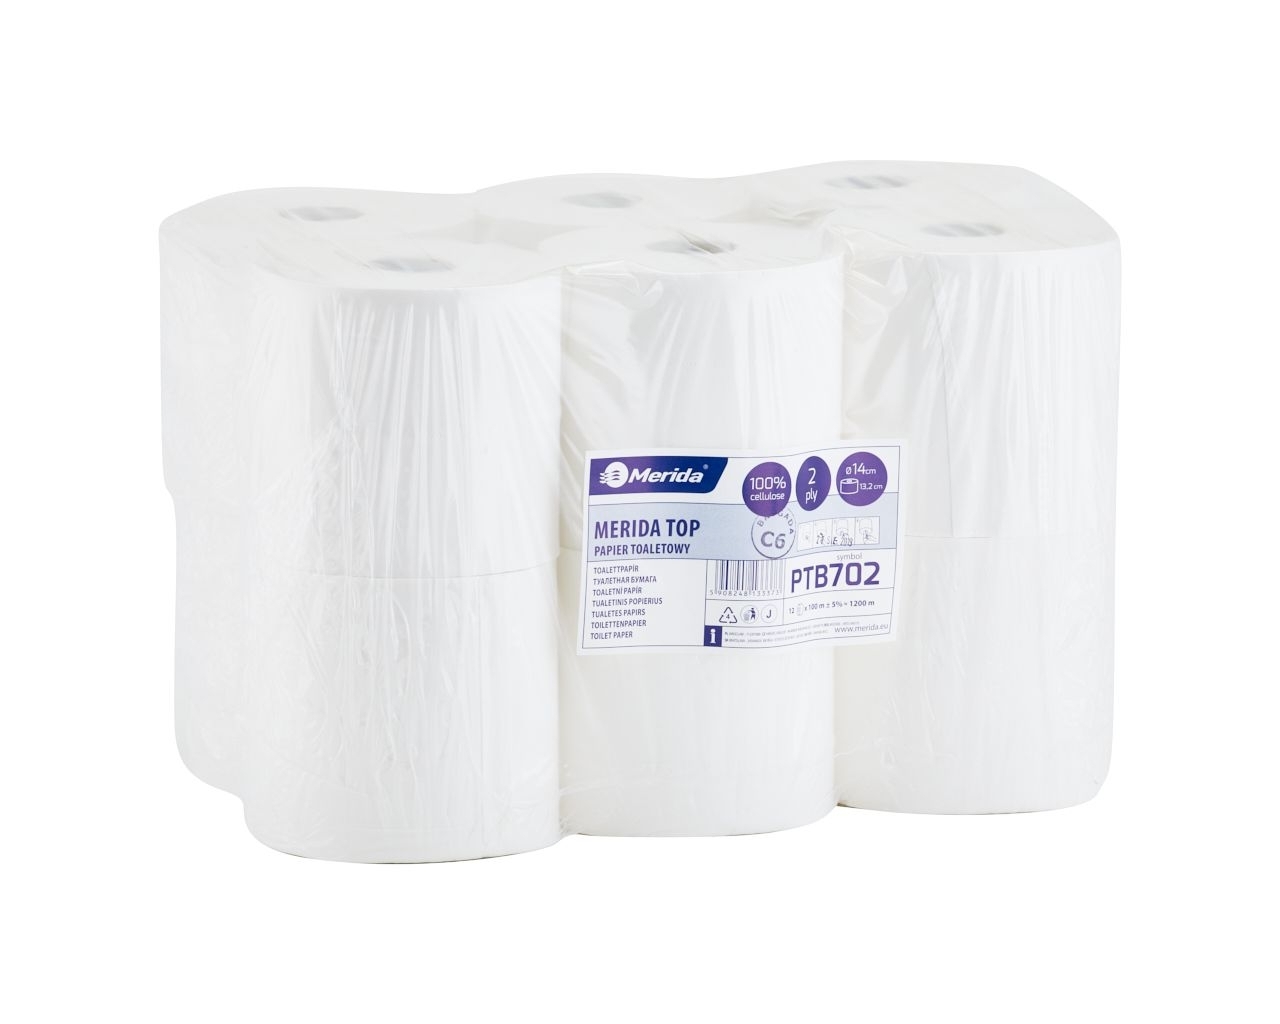 Papier toaletowy MERIDA TOP, biały, średnica 14 cm, długość roli 100 m, opakowanie 12 sztuk